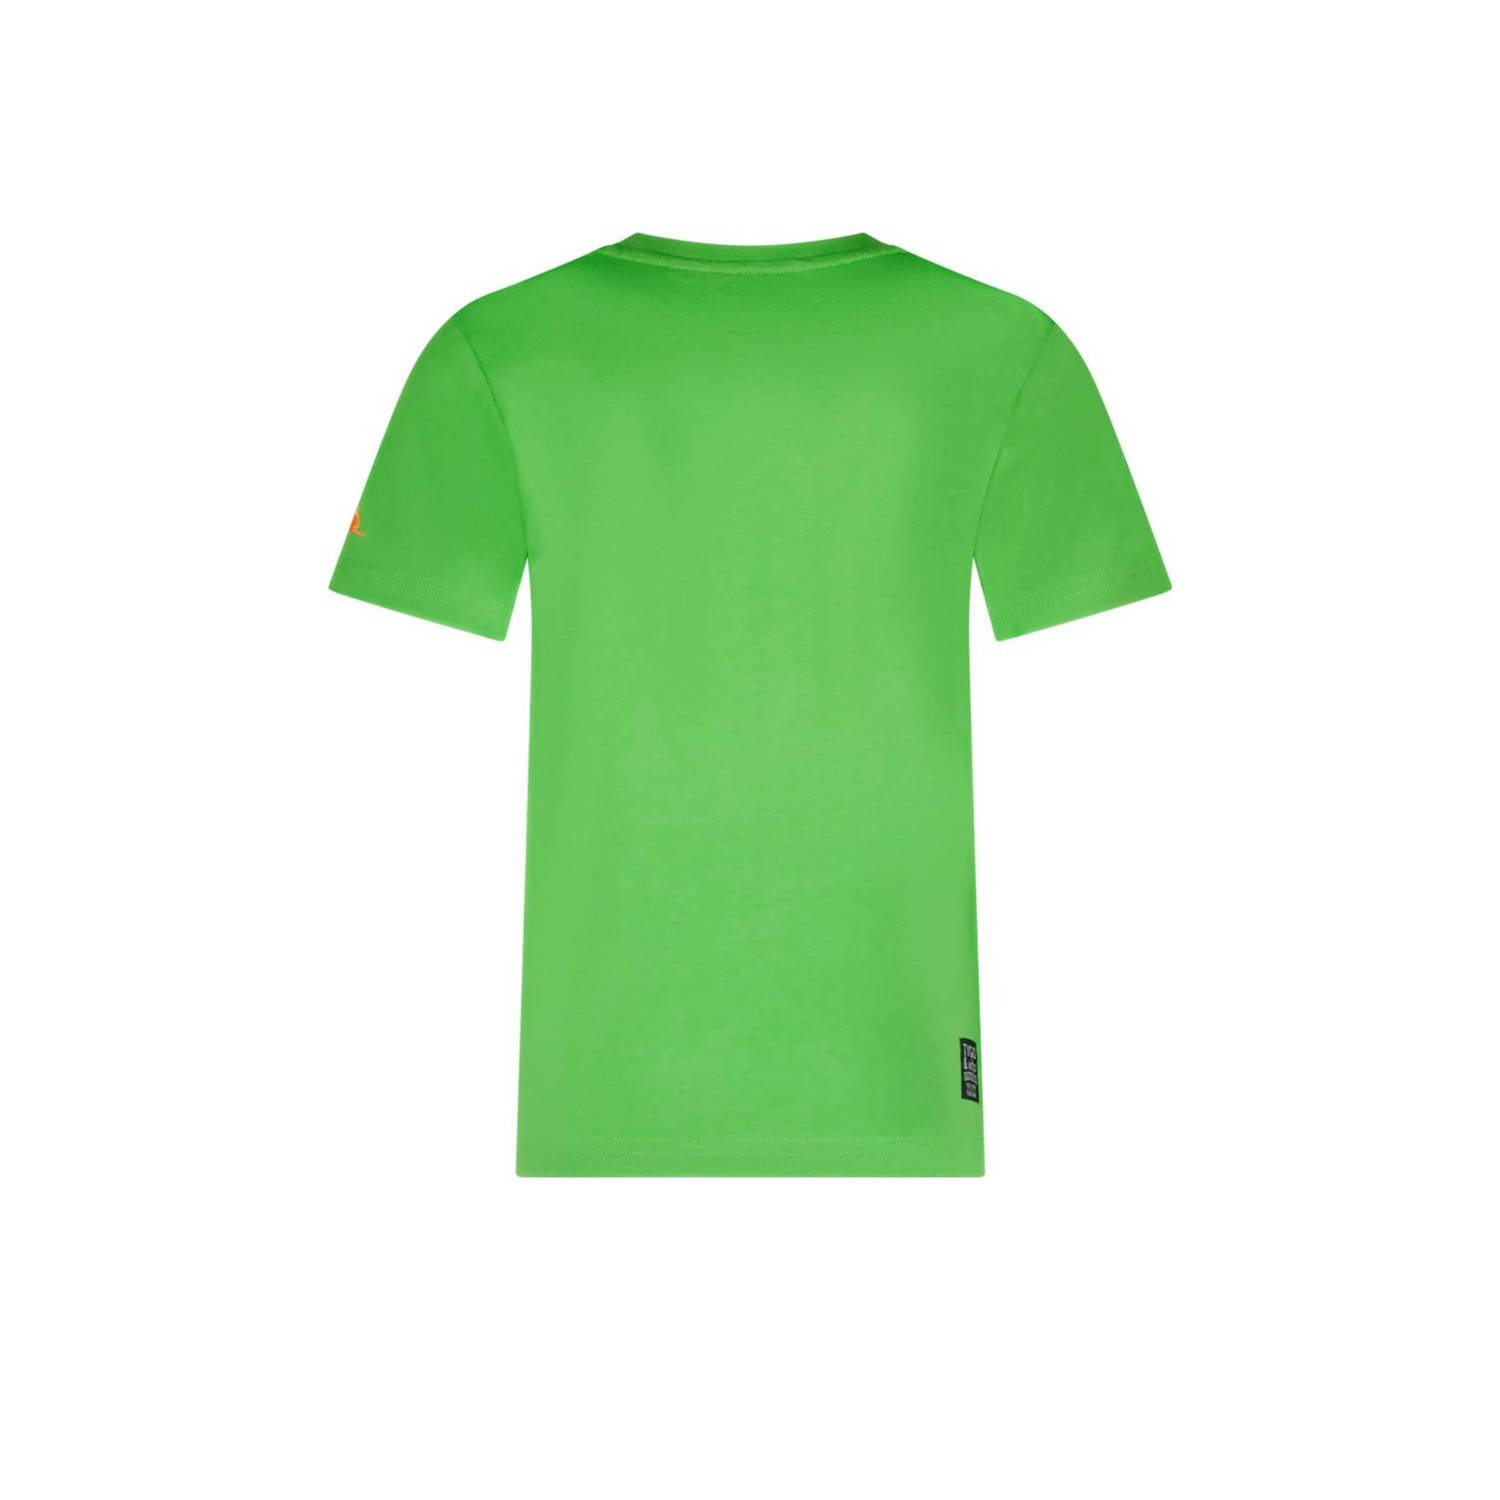 TYGO & vito T-shirt Tijn met printopdruk neongroen